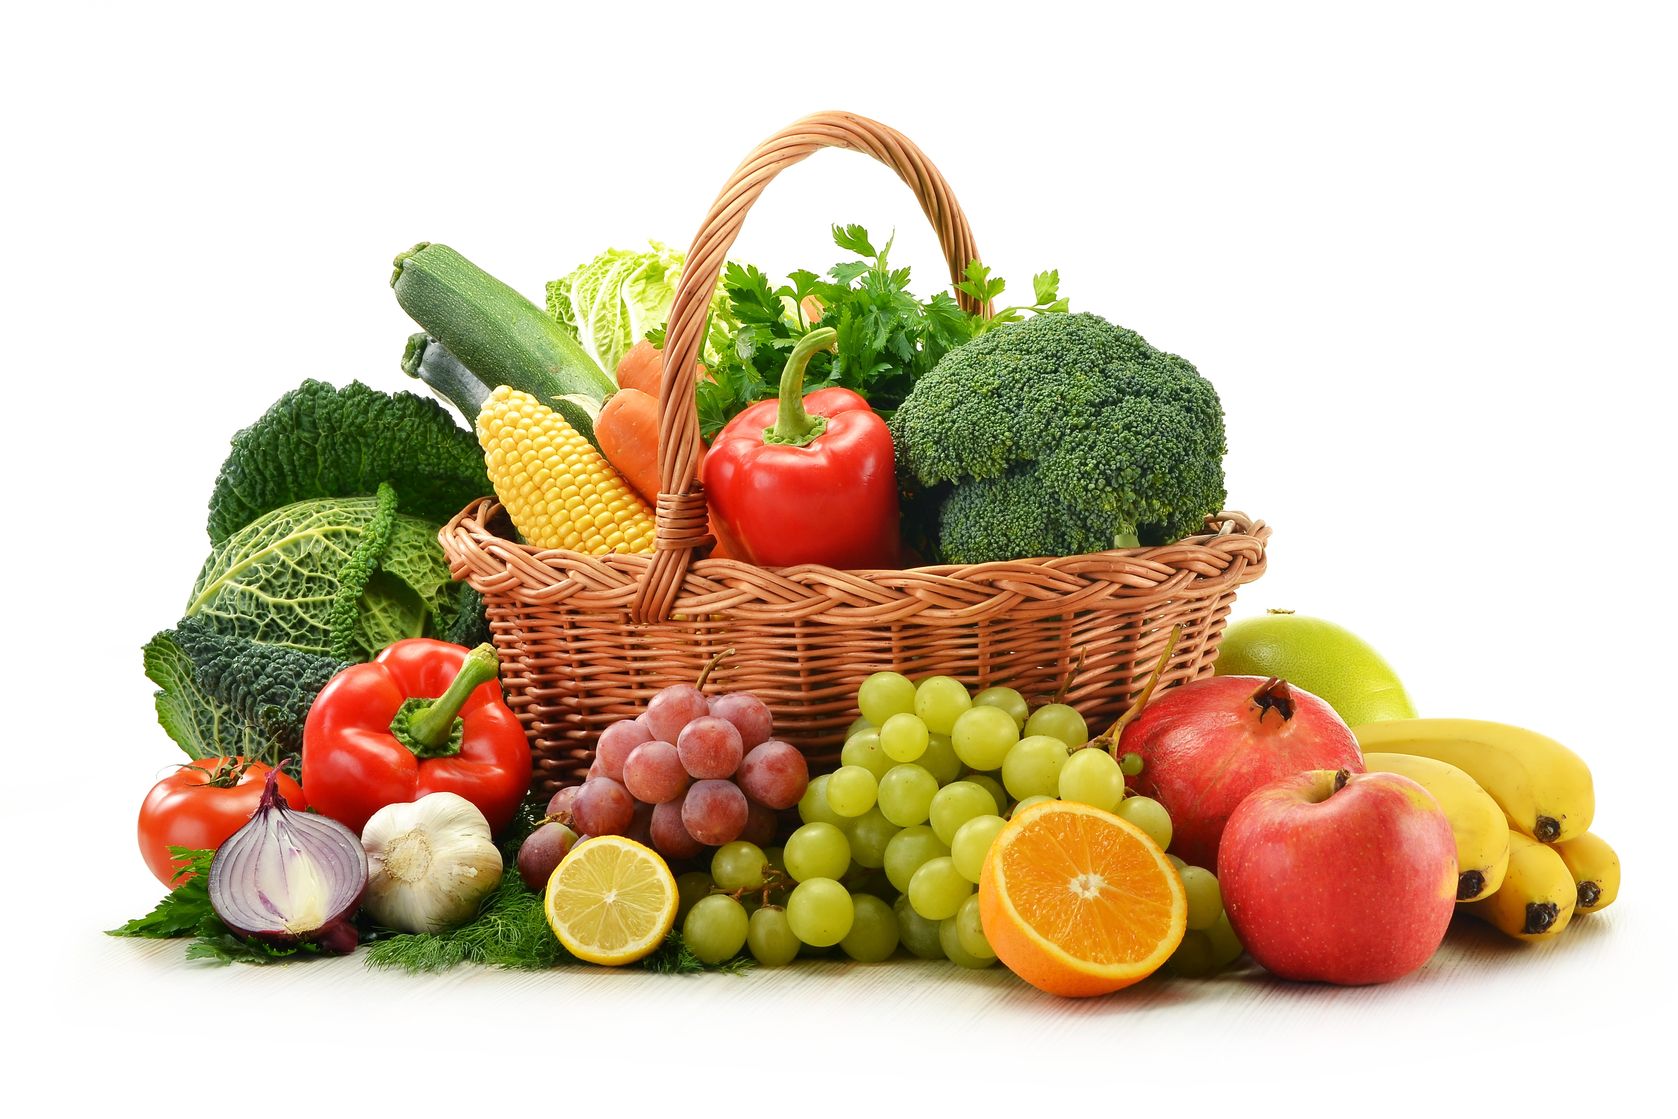 ירקות ופירות בחמישה צבעים